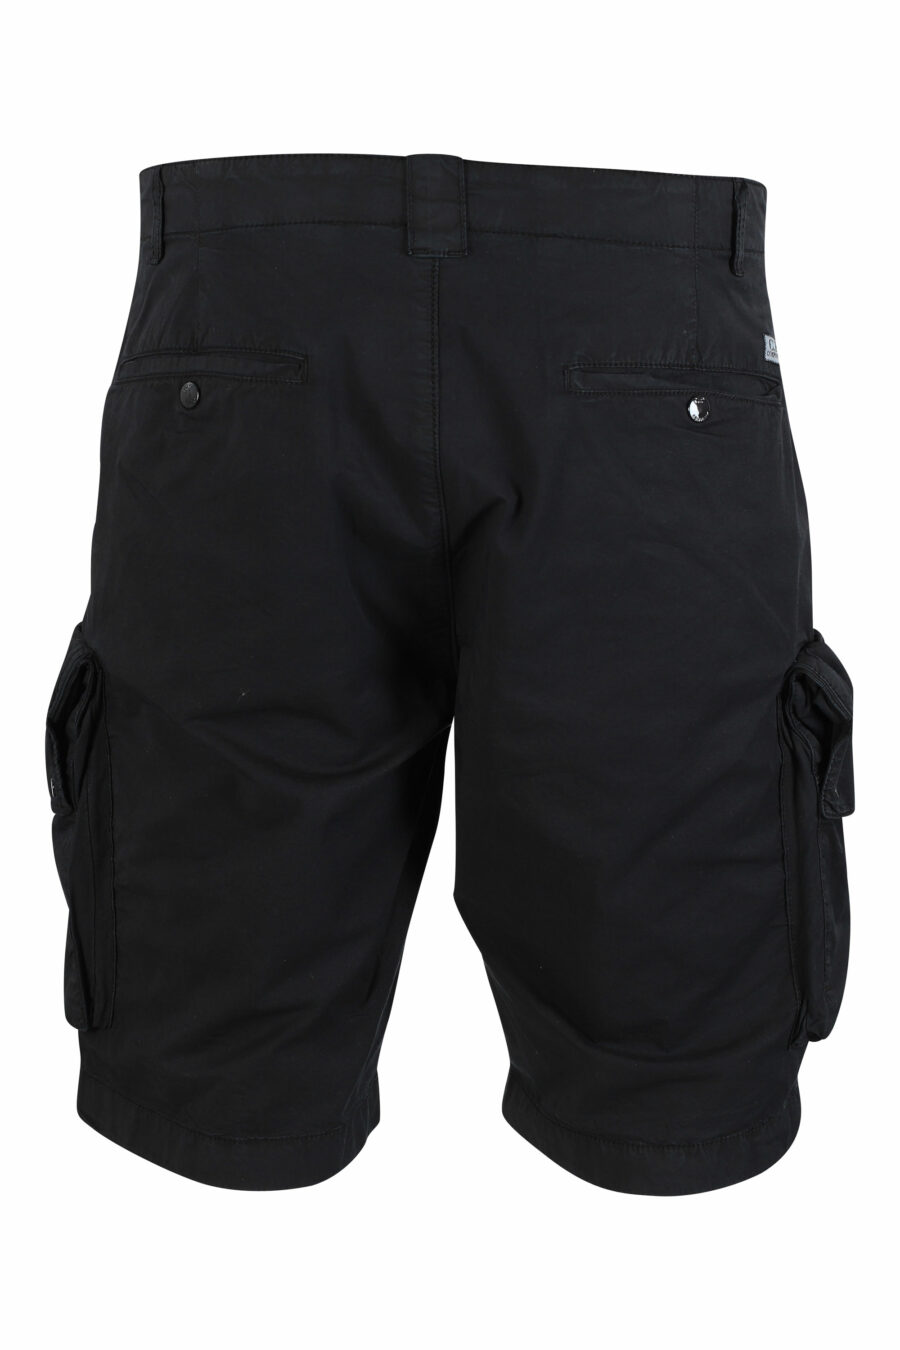 Schwarze Shorts mit Seitentaschen und rundem Mini-Logo - IMG 9487